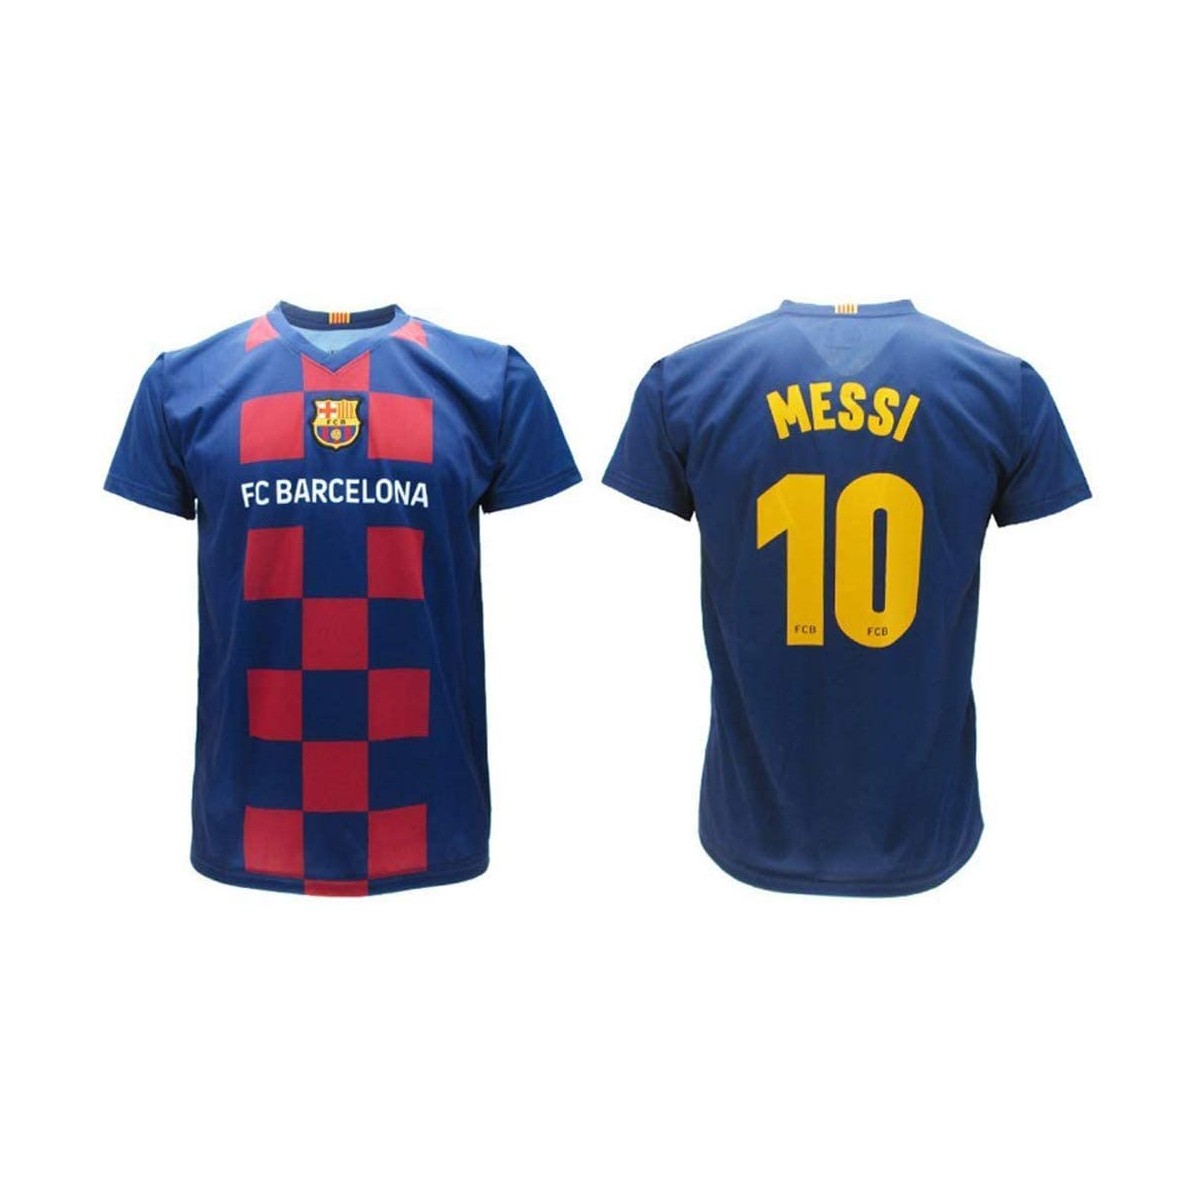 Maglietta per bambini di Messi 2020 F.C Barcelona Ufficiale, versione Home